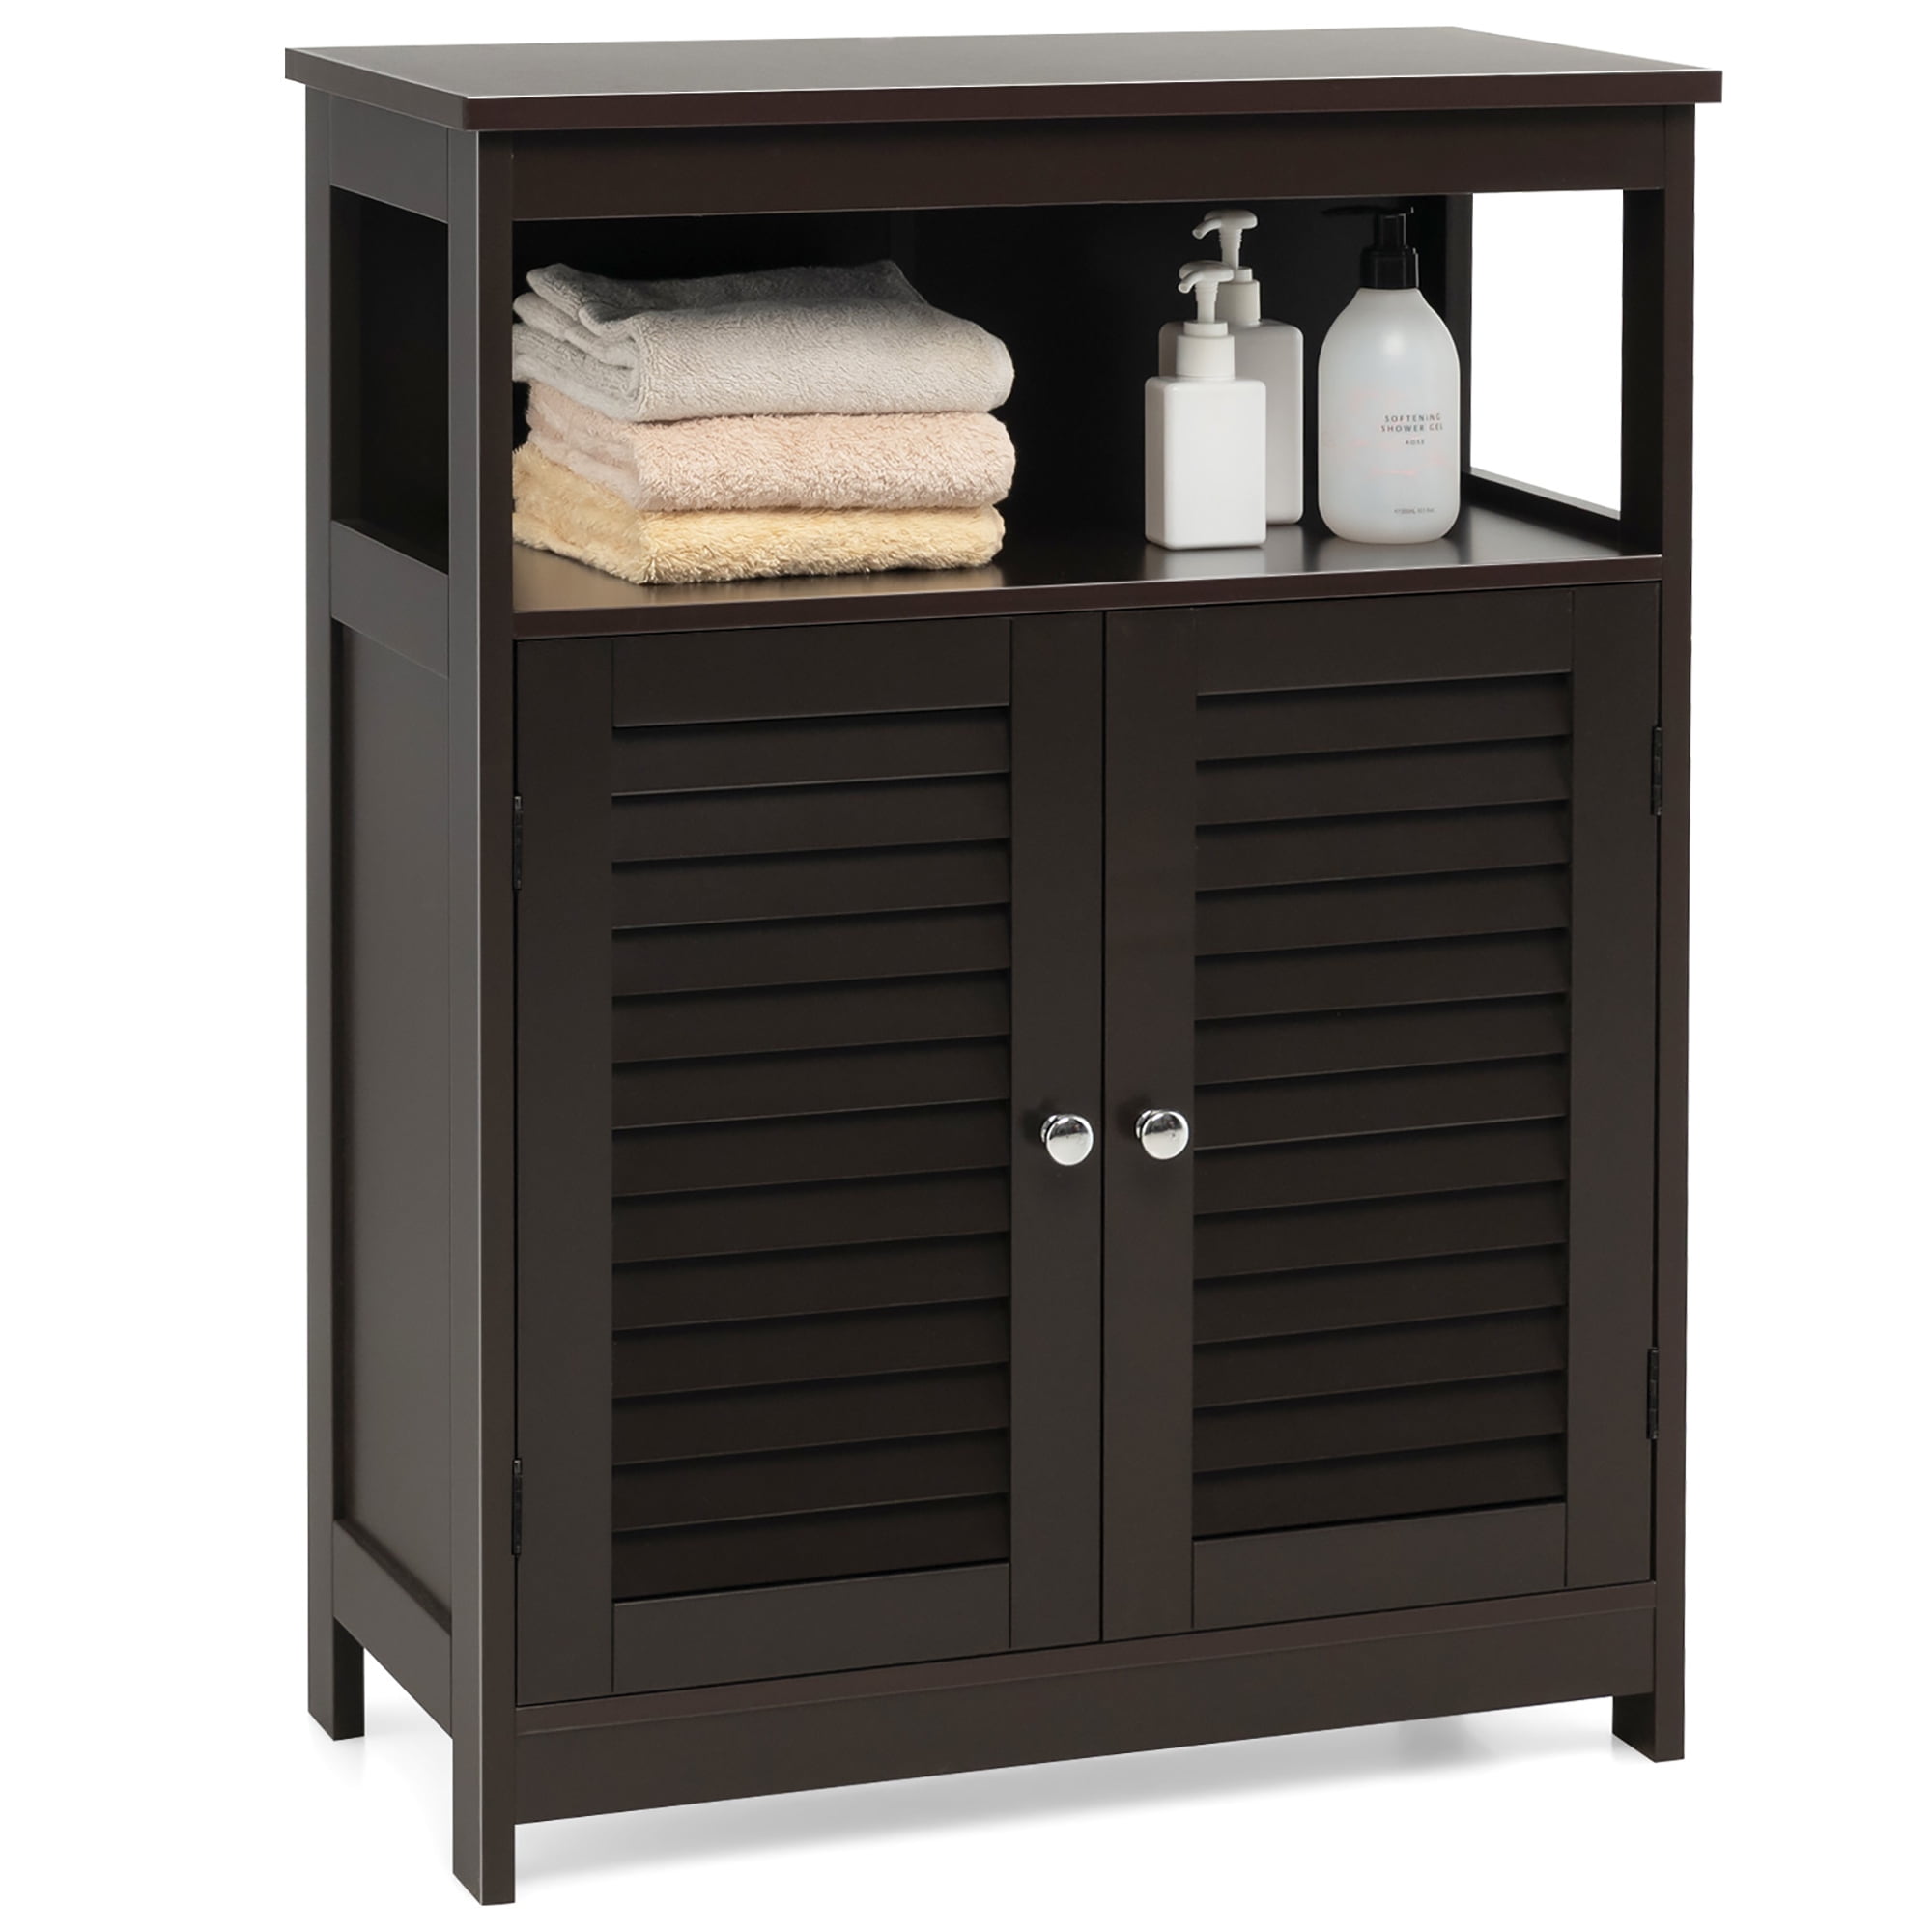 Costway Bathroom Storage Cabinet Wood Floor Cabinet w/Double Shutter Door Coffee